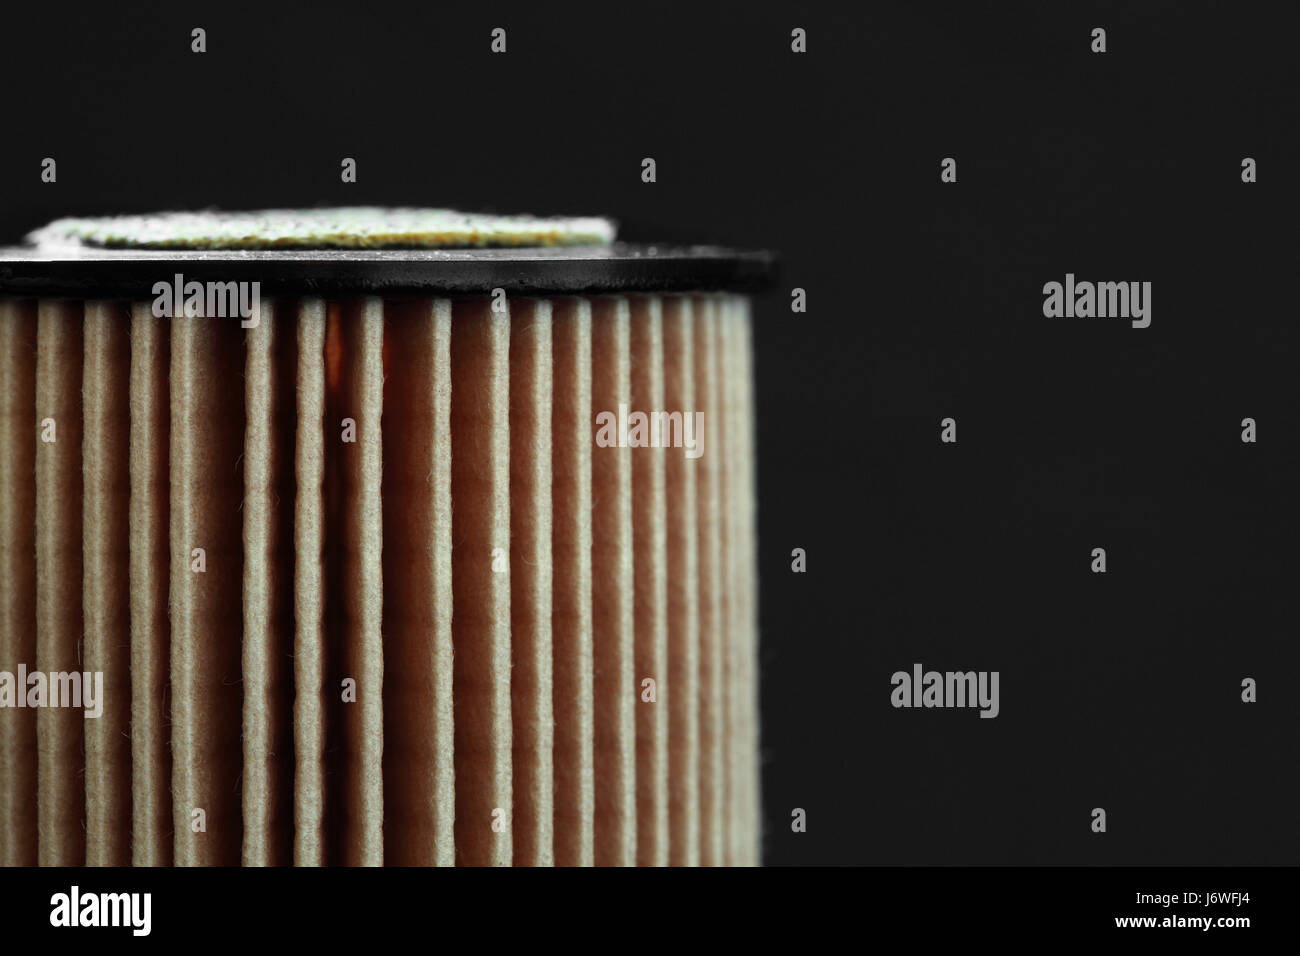 Querschnitt des Auto Ölfilter auf weißem Hintergrund. 3D-Darstellung  Stockfotografie - Alamy